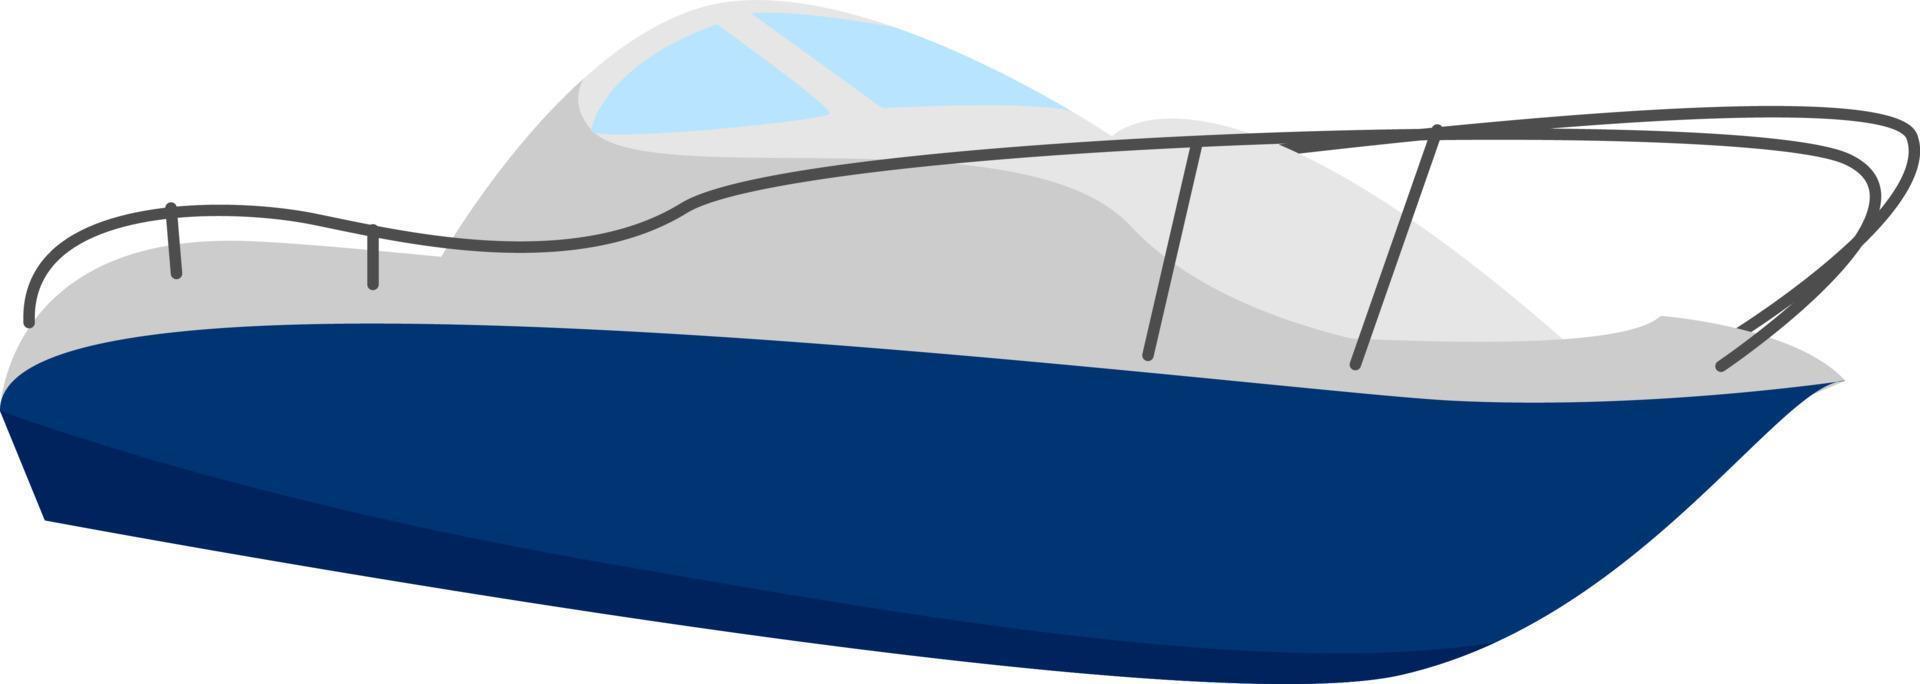 Barco rápido, ilustración, vector sobre fondo blanco.